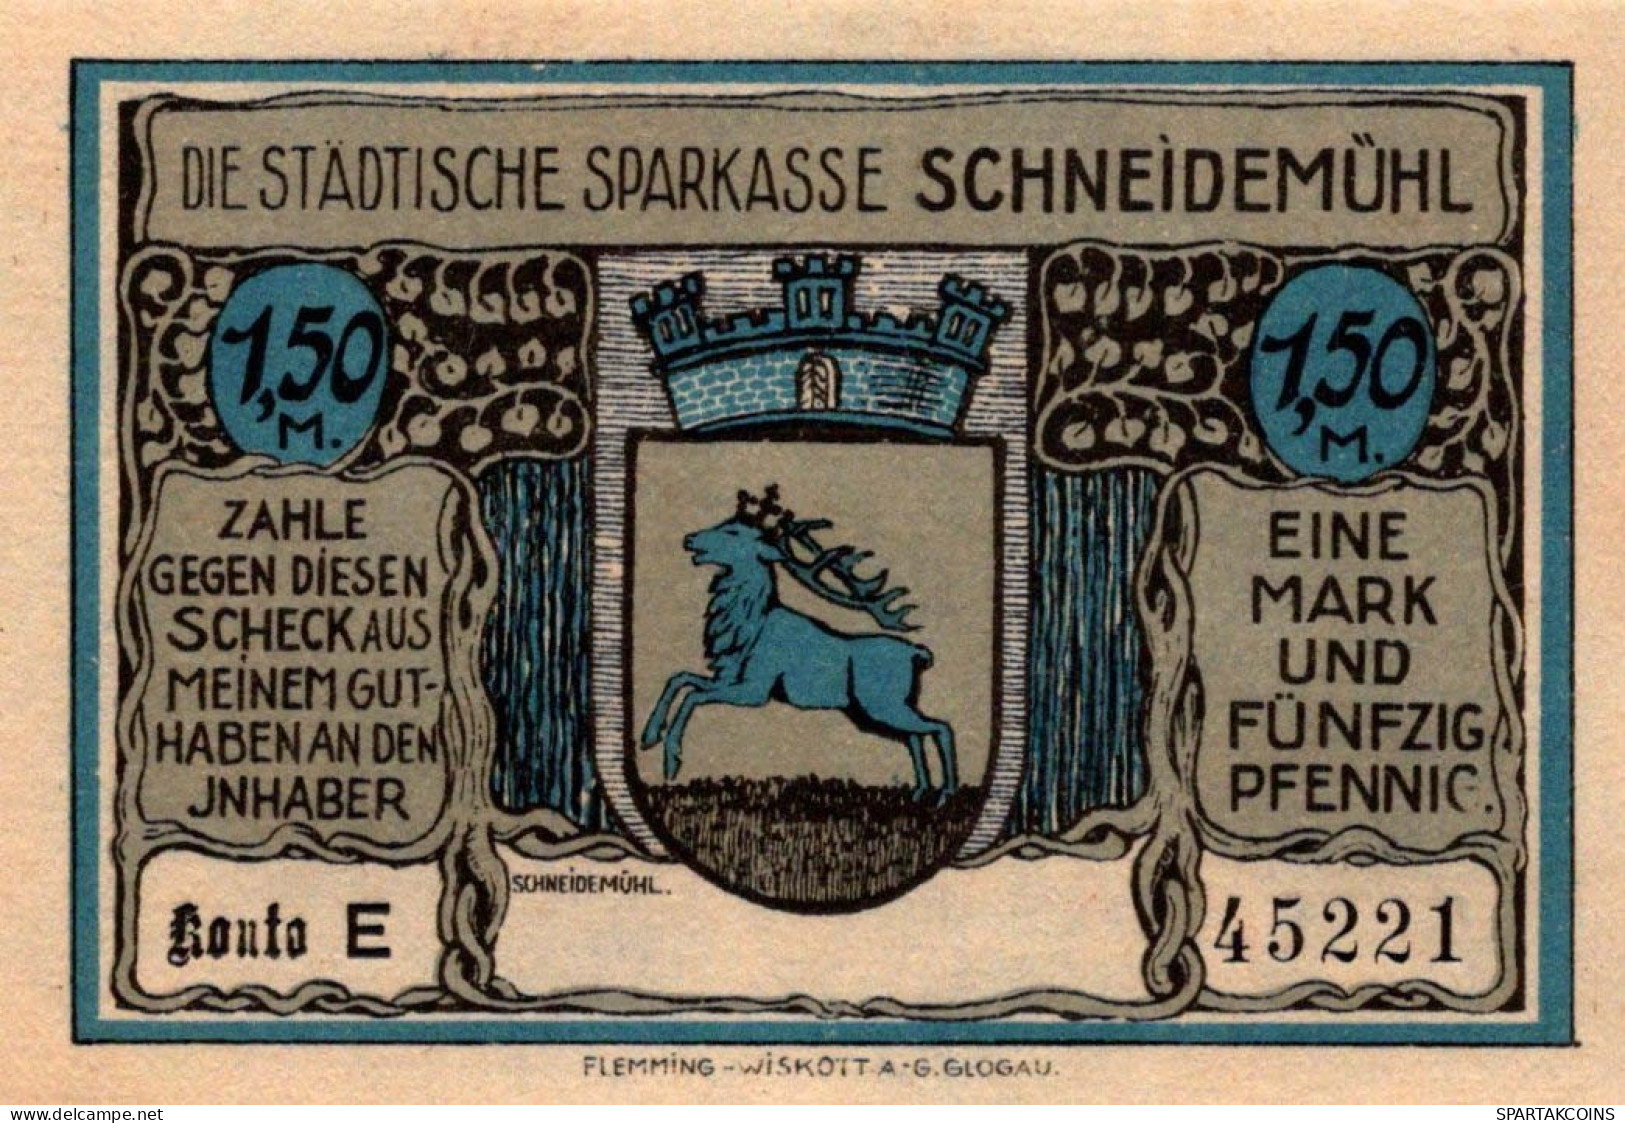 1.5 MARK Stadt SCHNEIDEMÜHL Posen UNC DEUTSCHLAND Notgeld Banknote #PI029 - [11] Local Banknote Issues